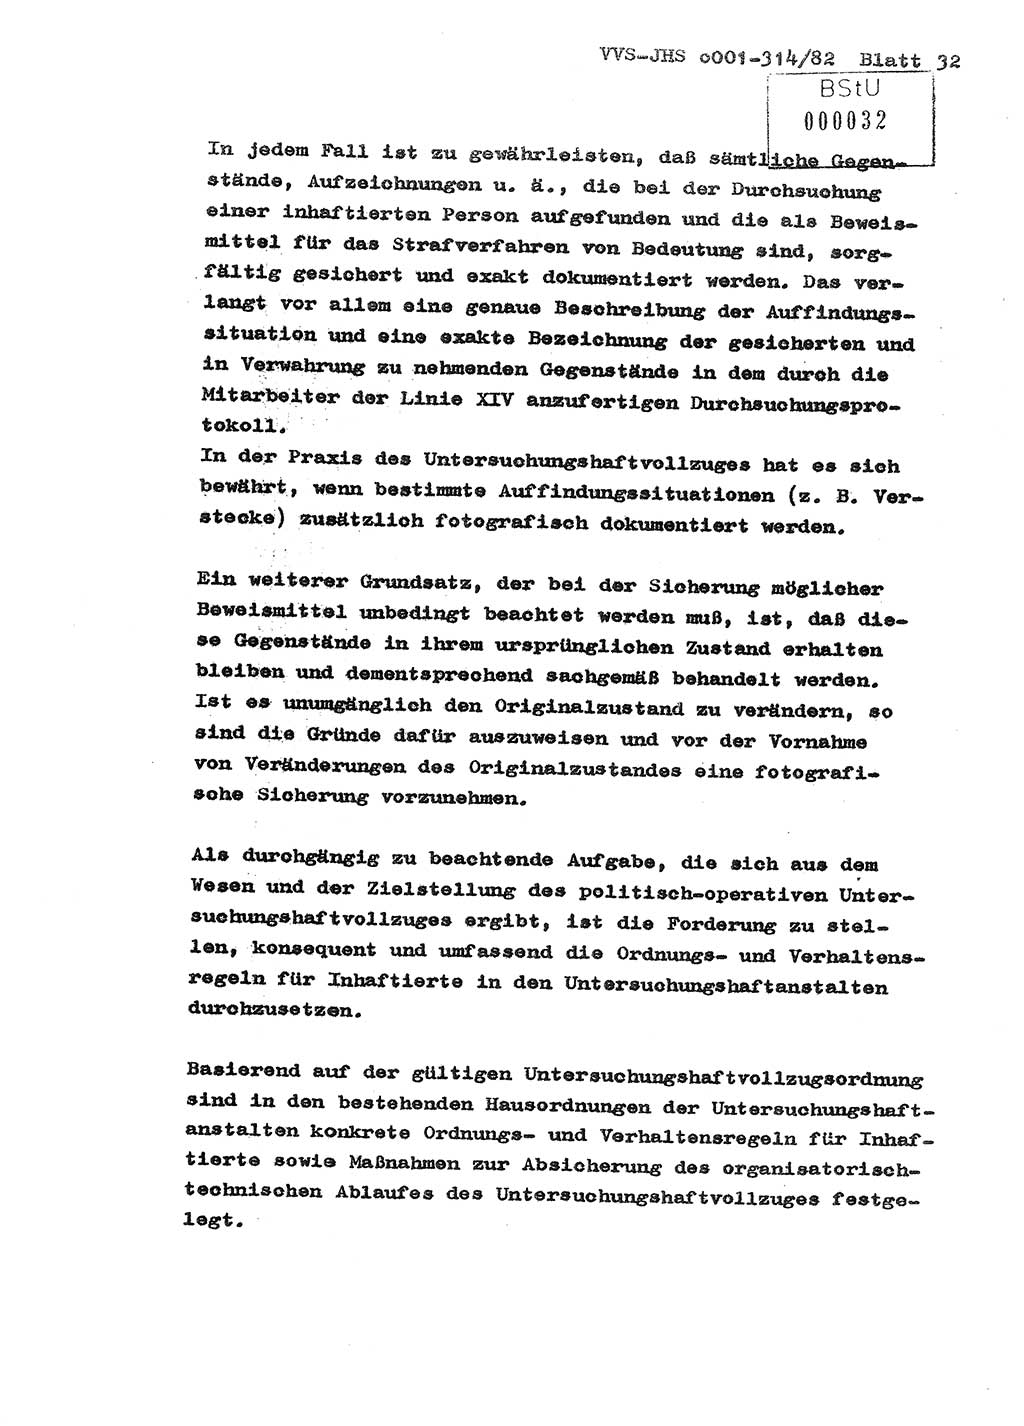 Diplomarbeit Hauptmann Wolfgang Schröder (Abt. ⅩⅣ), Ministerium für Staatssicherheit (MfS) [Deutsche Demokratische Republik (DDR)], Juristische Hochschule (JHS), Vertrauliche Verschlußsache (VVS) o001-314/82, Potsdam 1982, Seite 32 (Dipl.-Arb. MfS DDR JHS VVS o001-314/82 1982, S. 32)